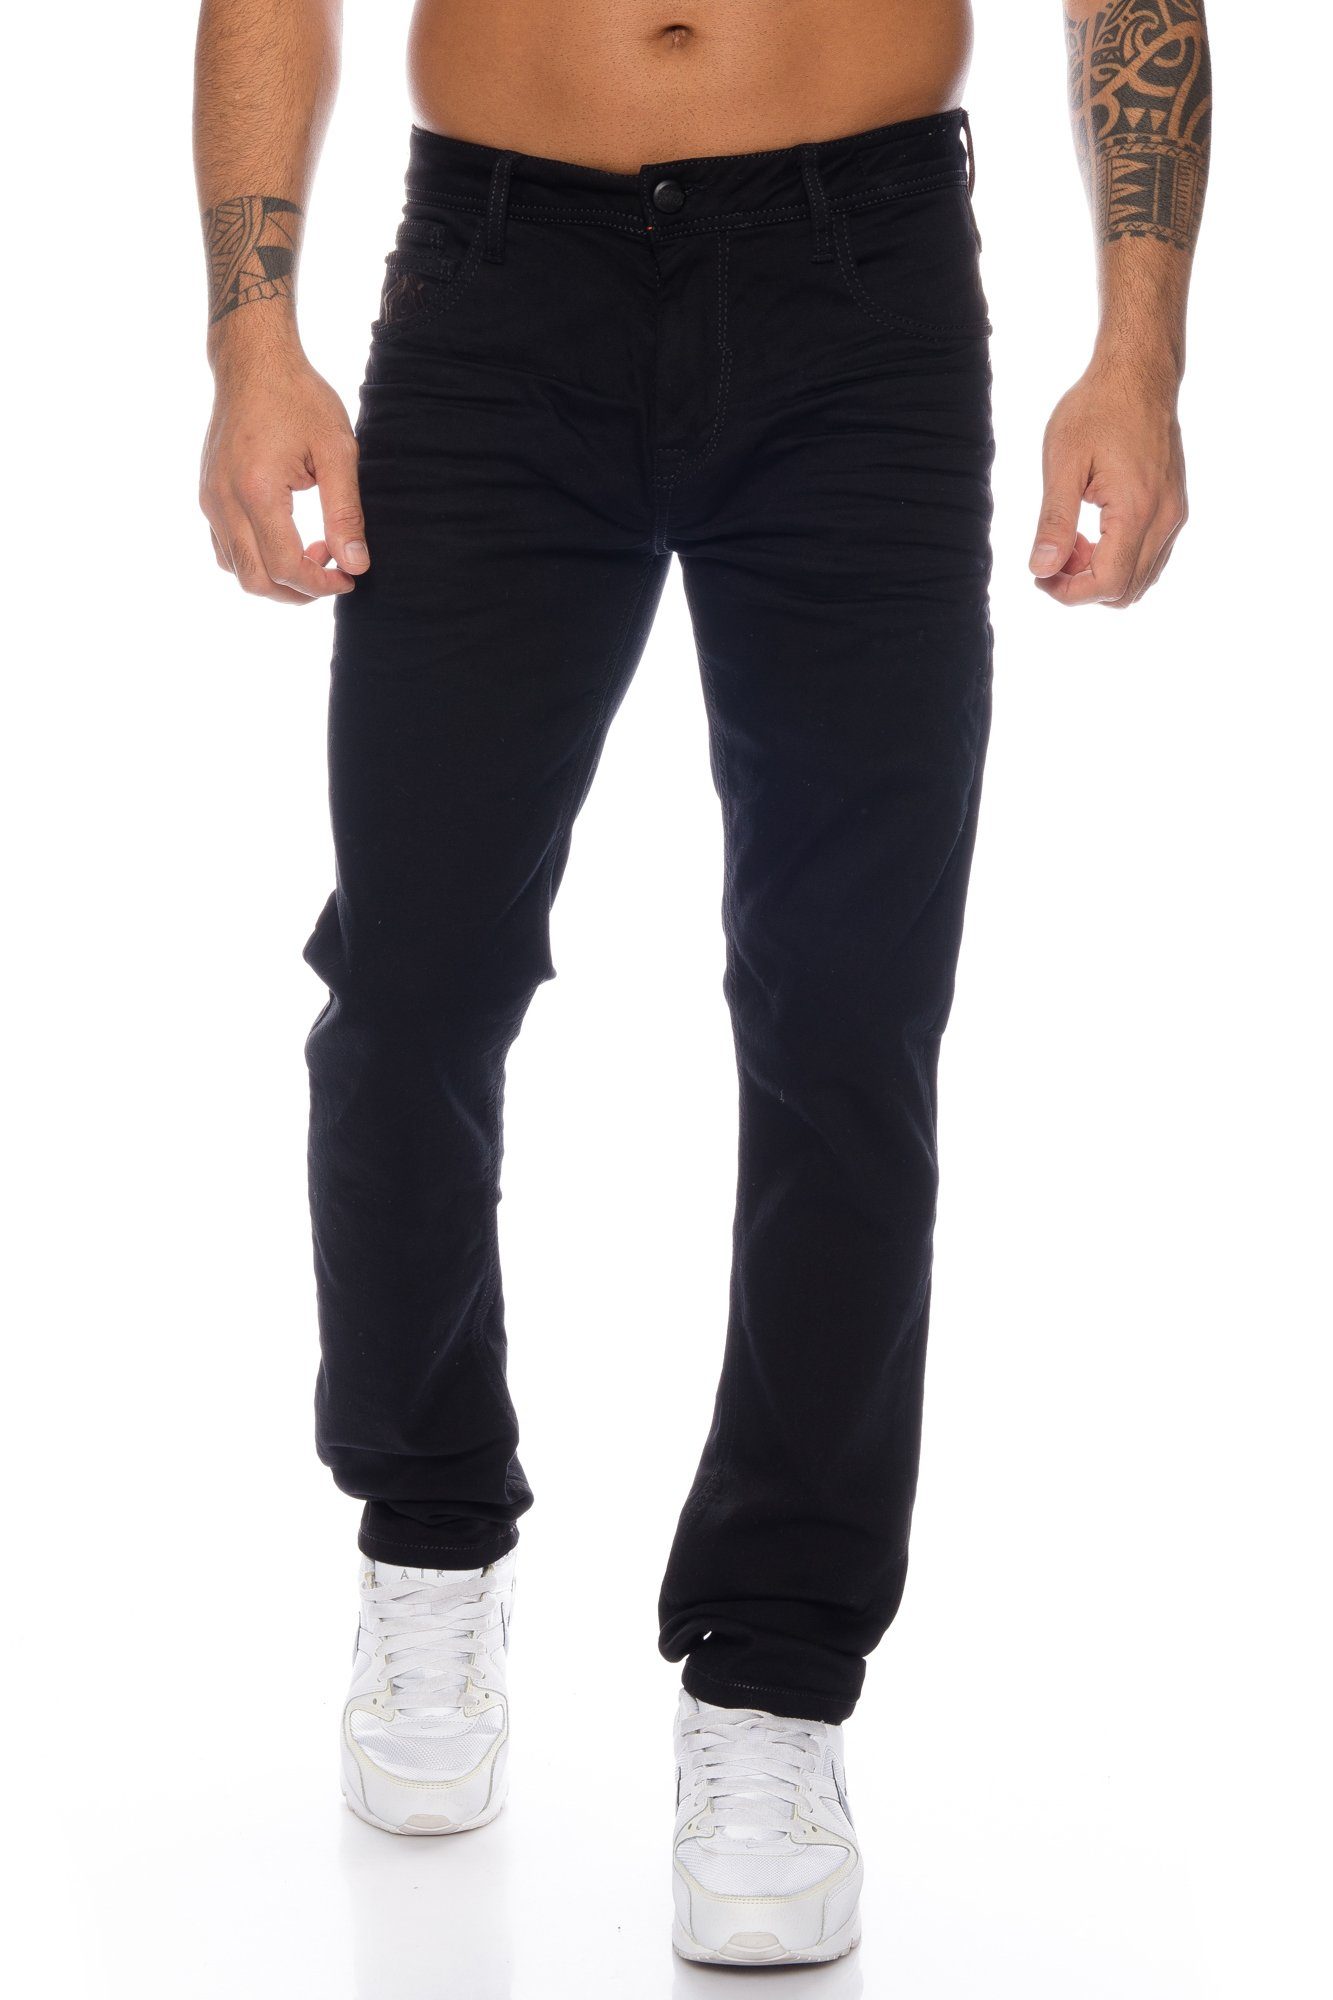 mit Herren dicken Nähten Elastisches basic Tragekomfort Cipo Hose Material Look angenehmen im dezenten Slim-fit-Jeans für & Baxx Jeans